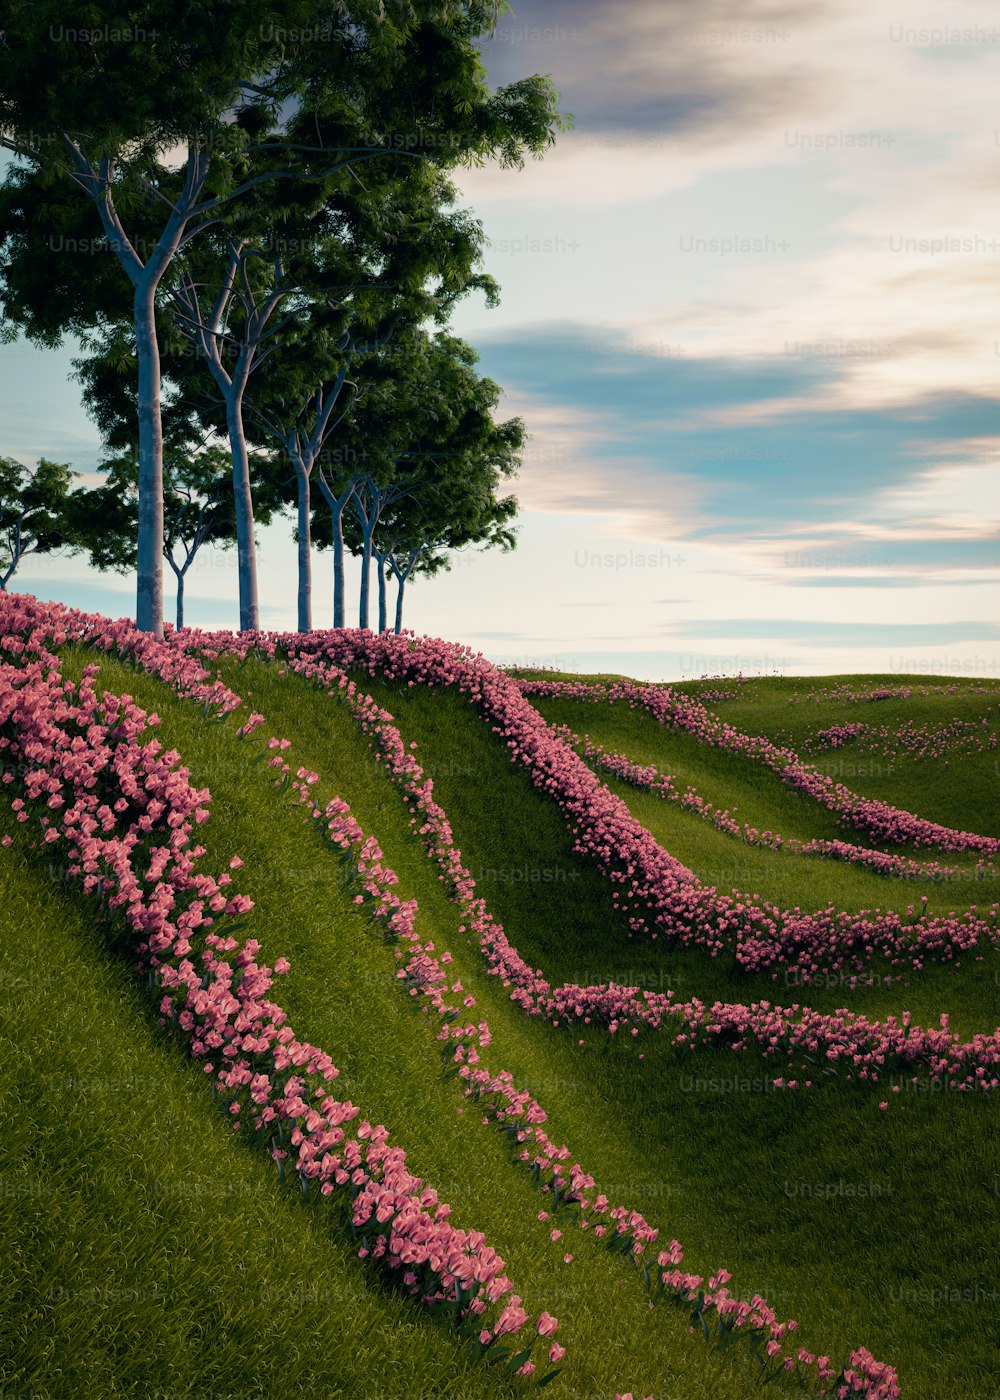 풀이 무성한 언덕에 분홍색 꽃을 그린 그림